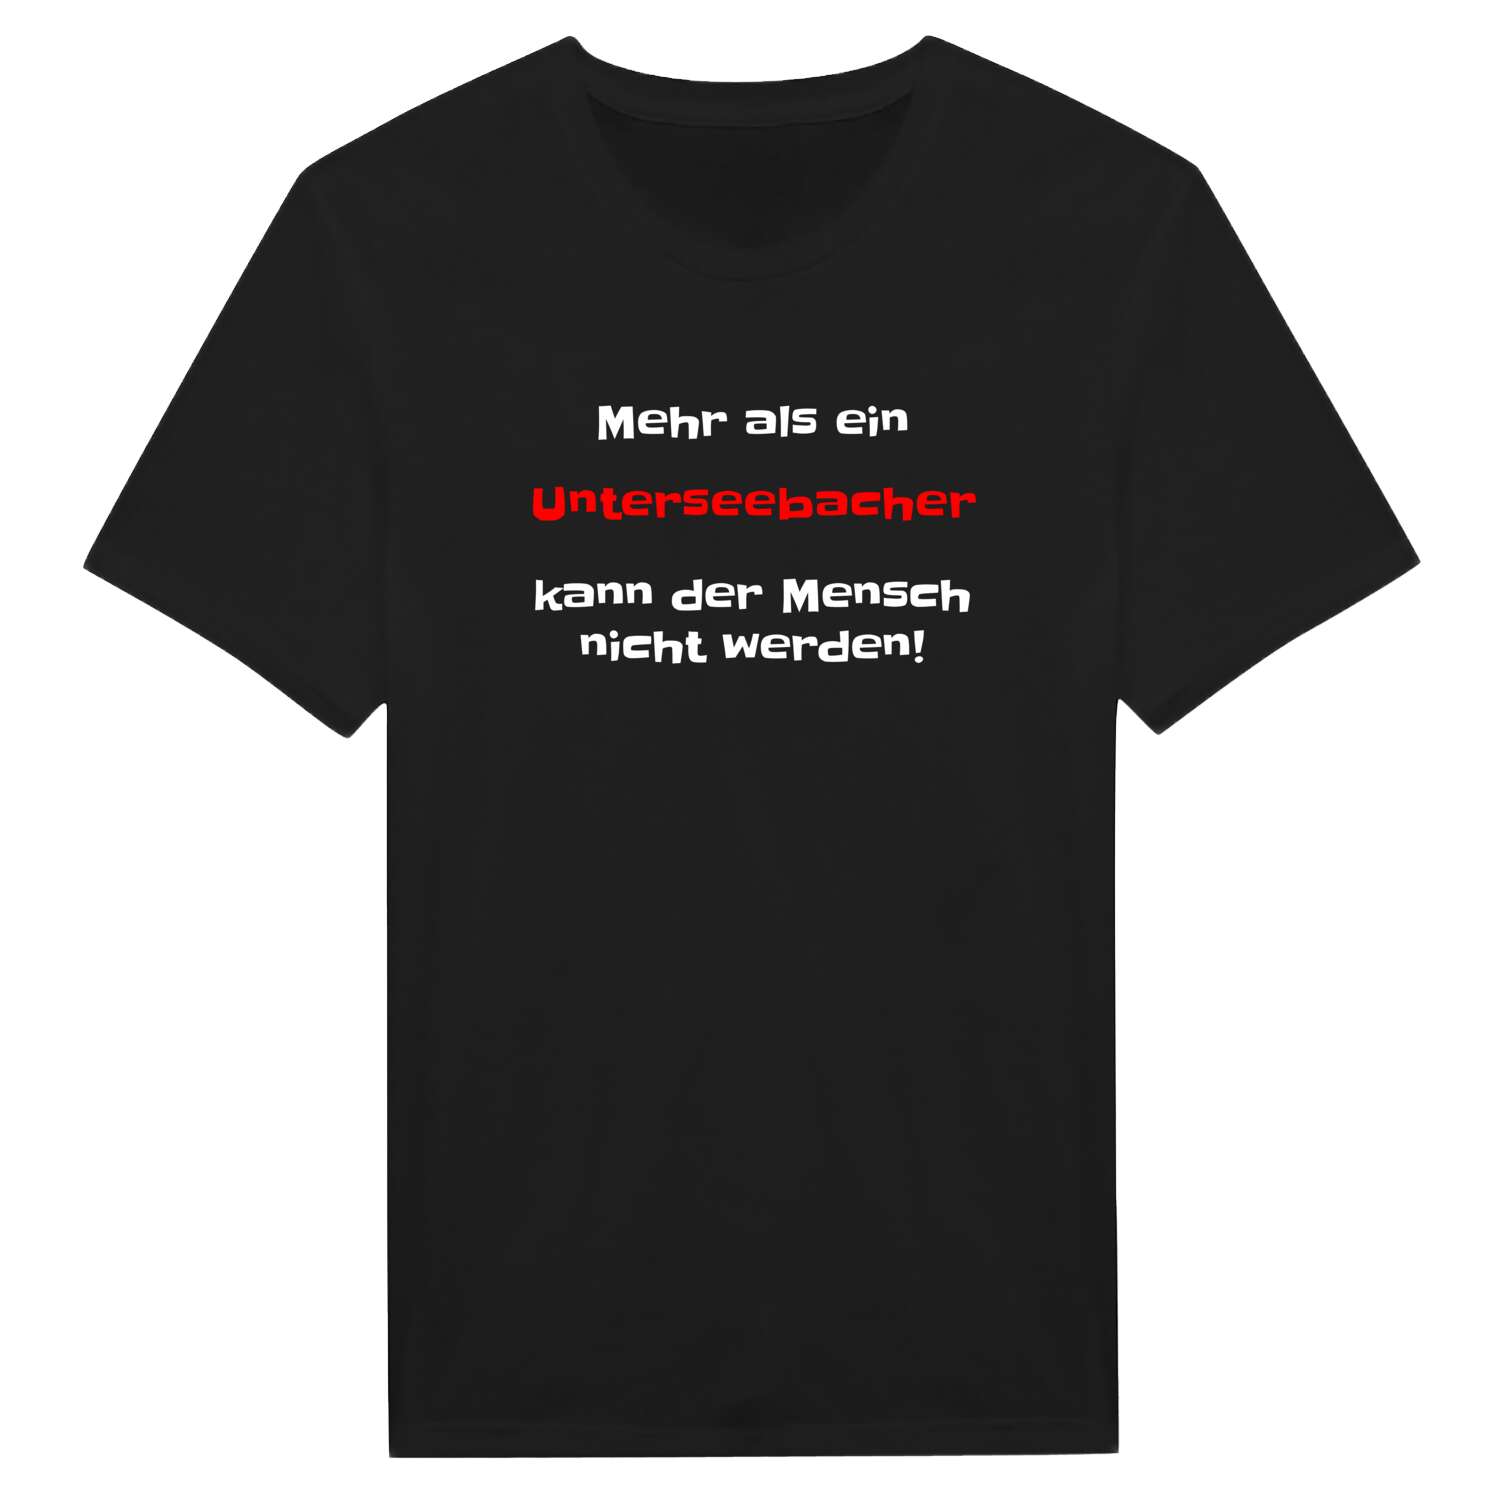 Unterseebach T-Shirt »Mehr als ein«